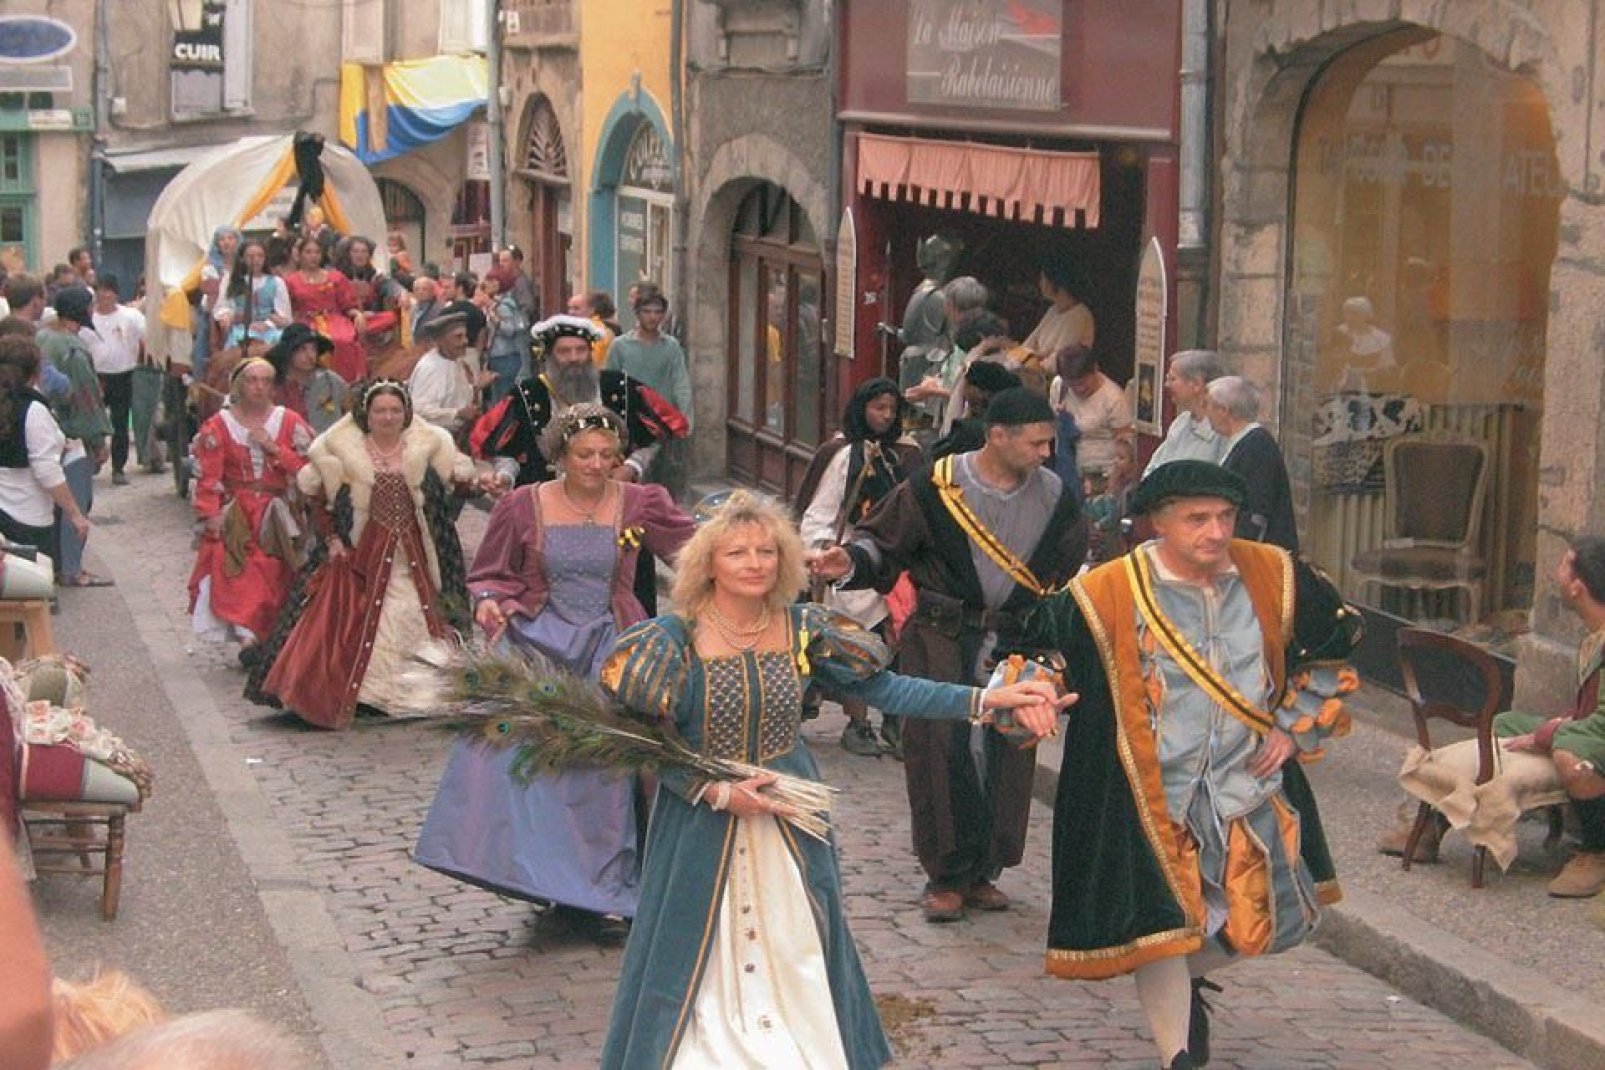 En septembre, la ville organise une grande fête de la renaissance. A cette occasion, on peut découvrir des costumes d'époque et assister à des reconstitutions historique.